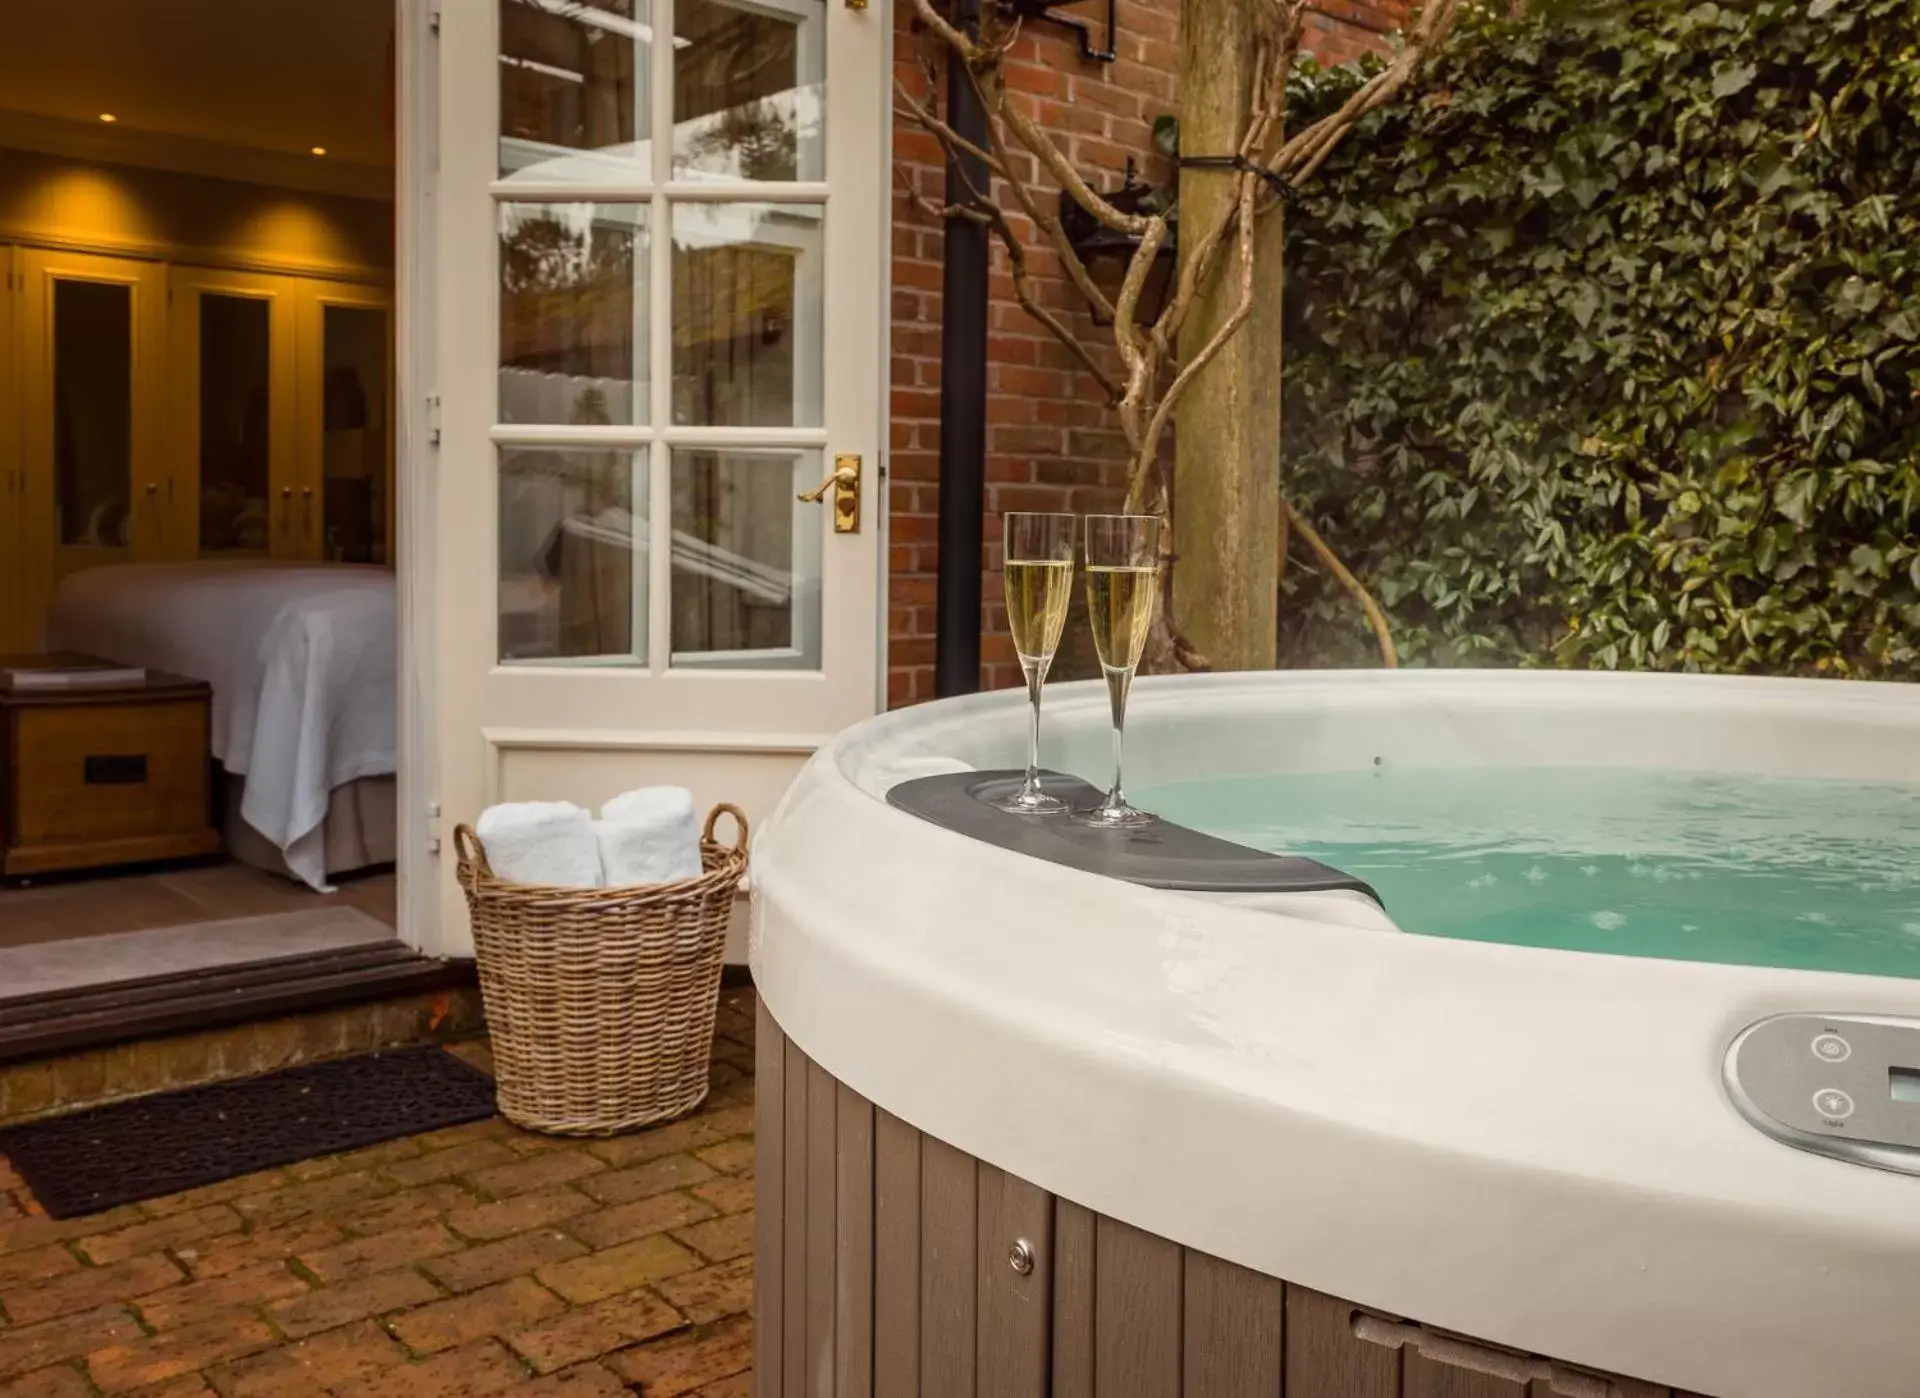 Hot Tub, Bathroom in Chewton Glen Hotel - an Iconic Luxury Hotel